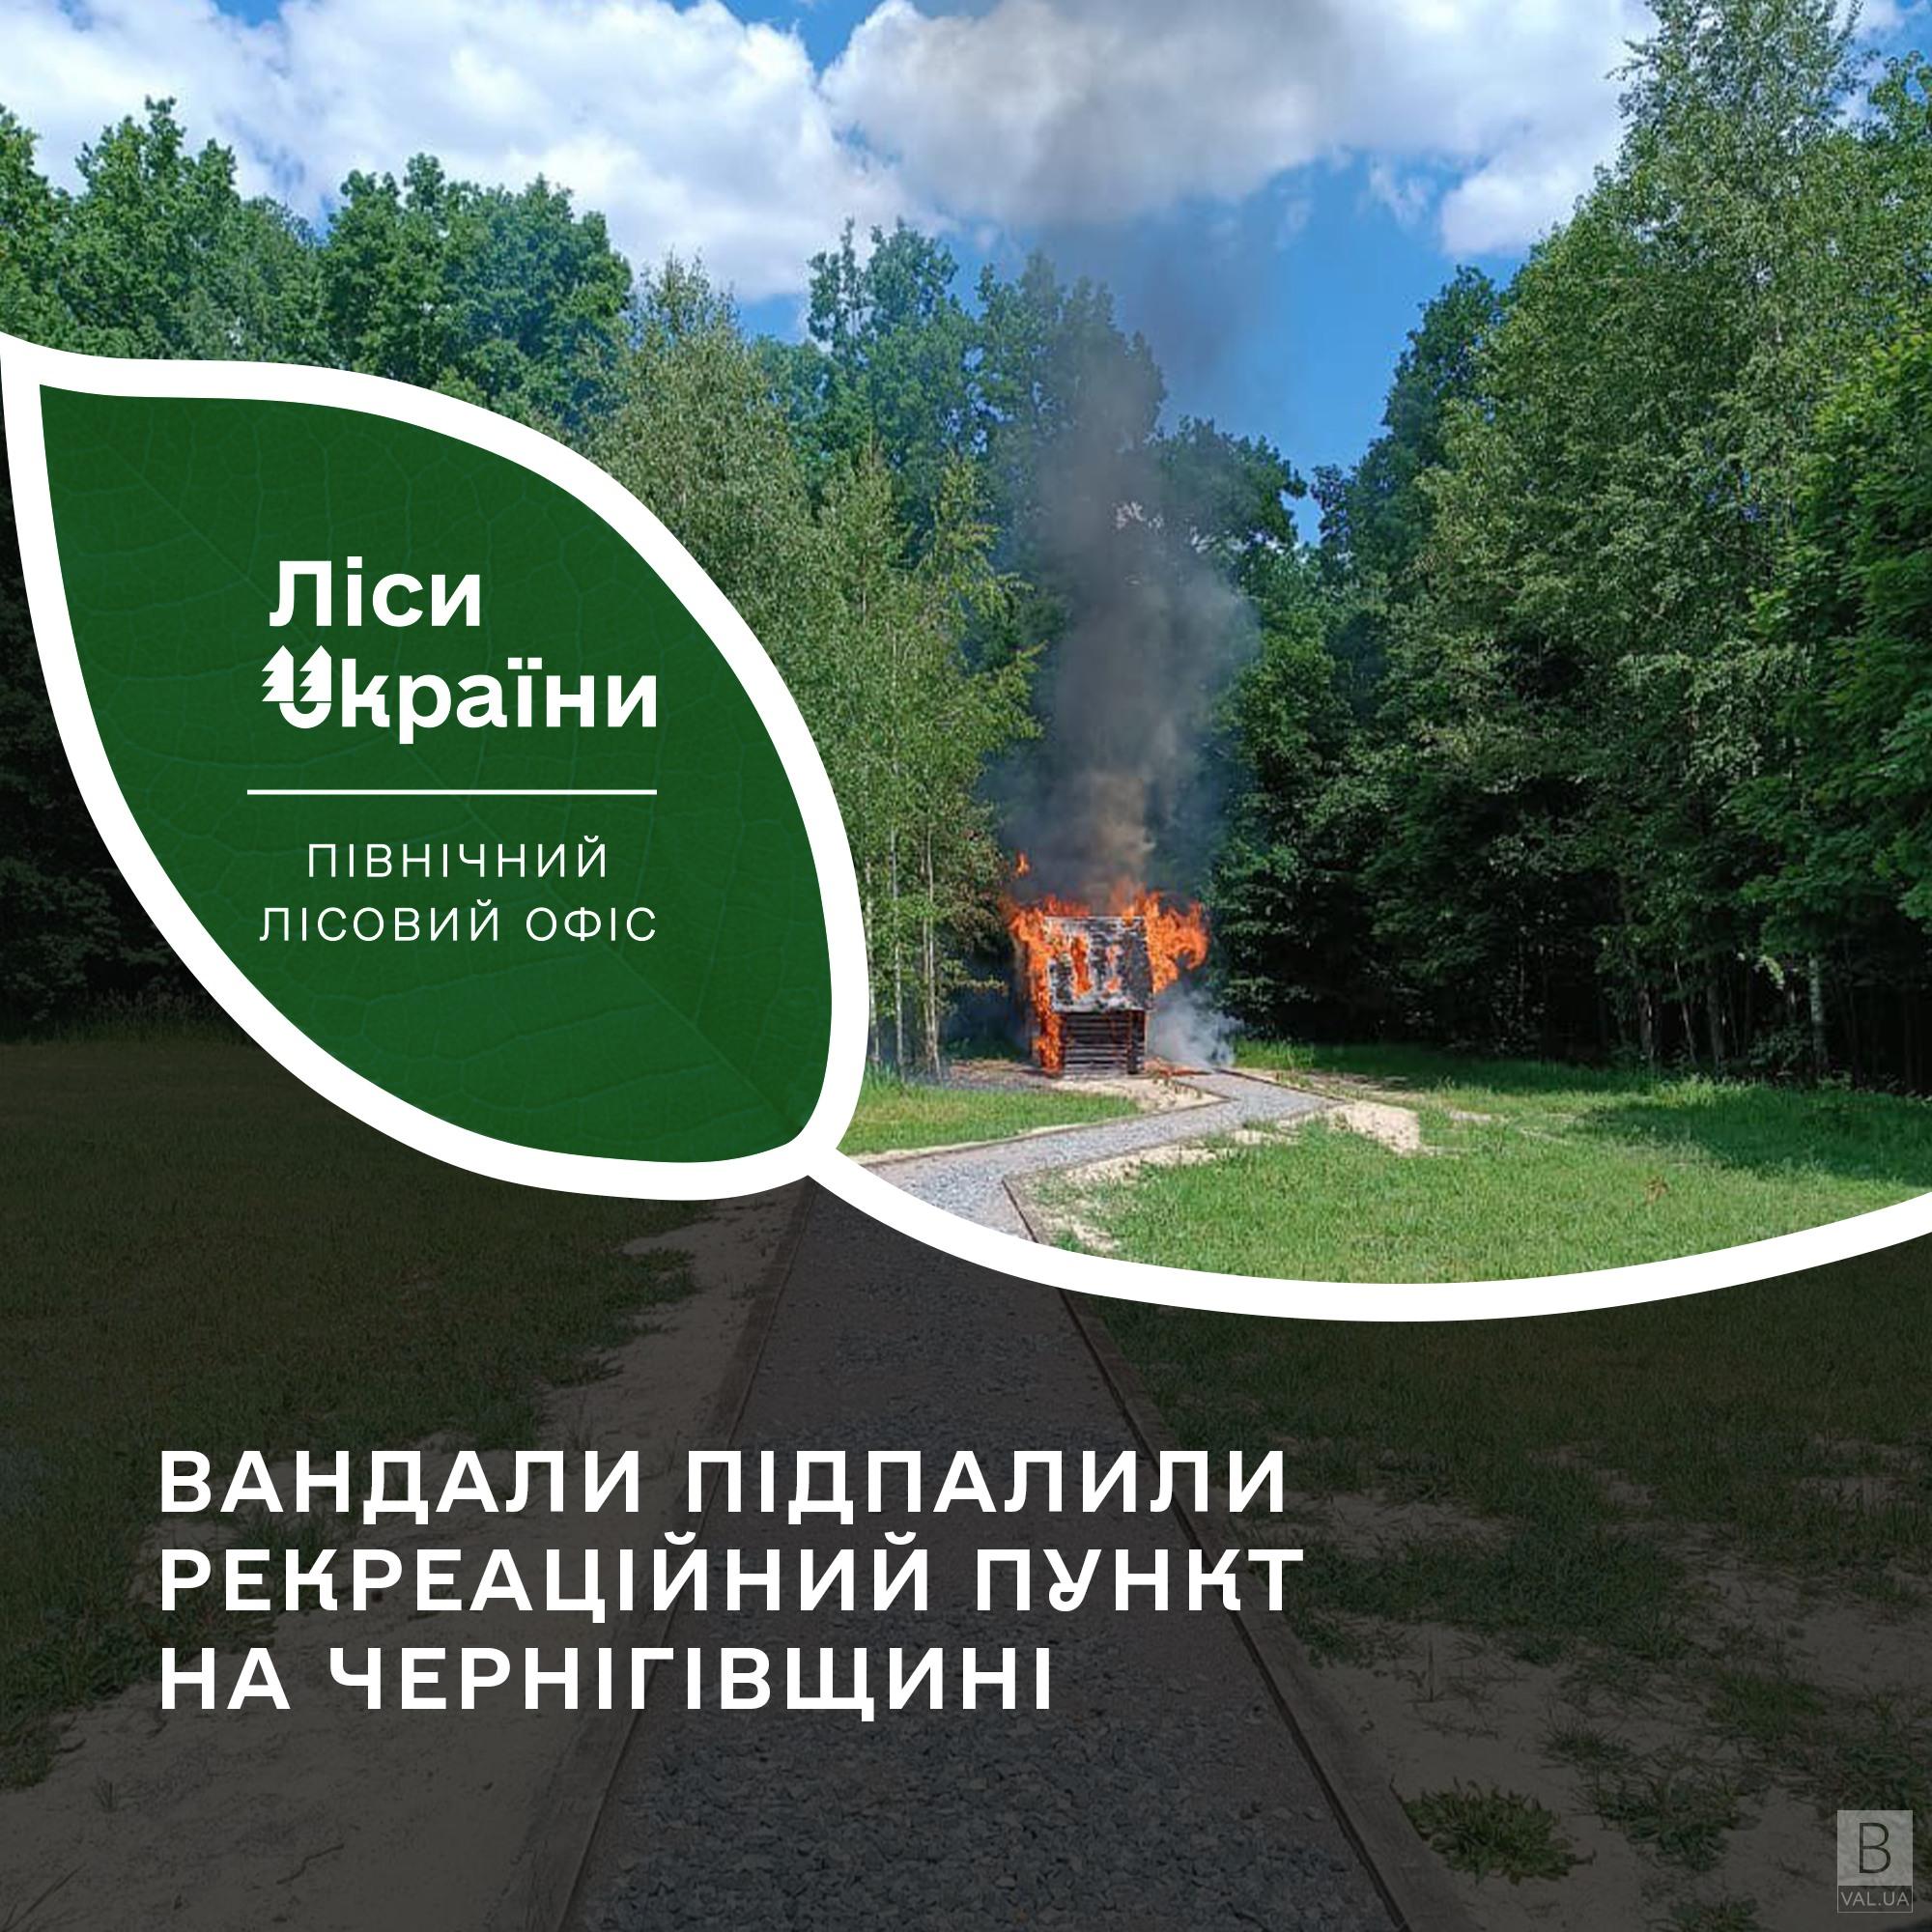 Вандали підпалили рекреаційний пункт на Чернігівщині 